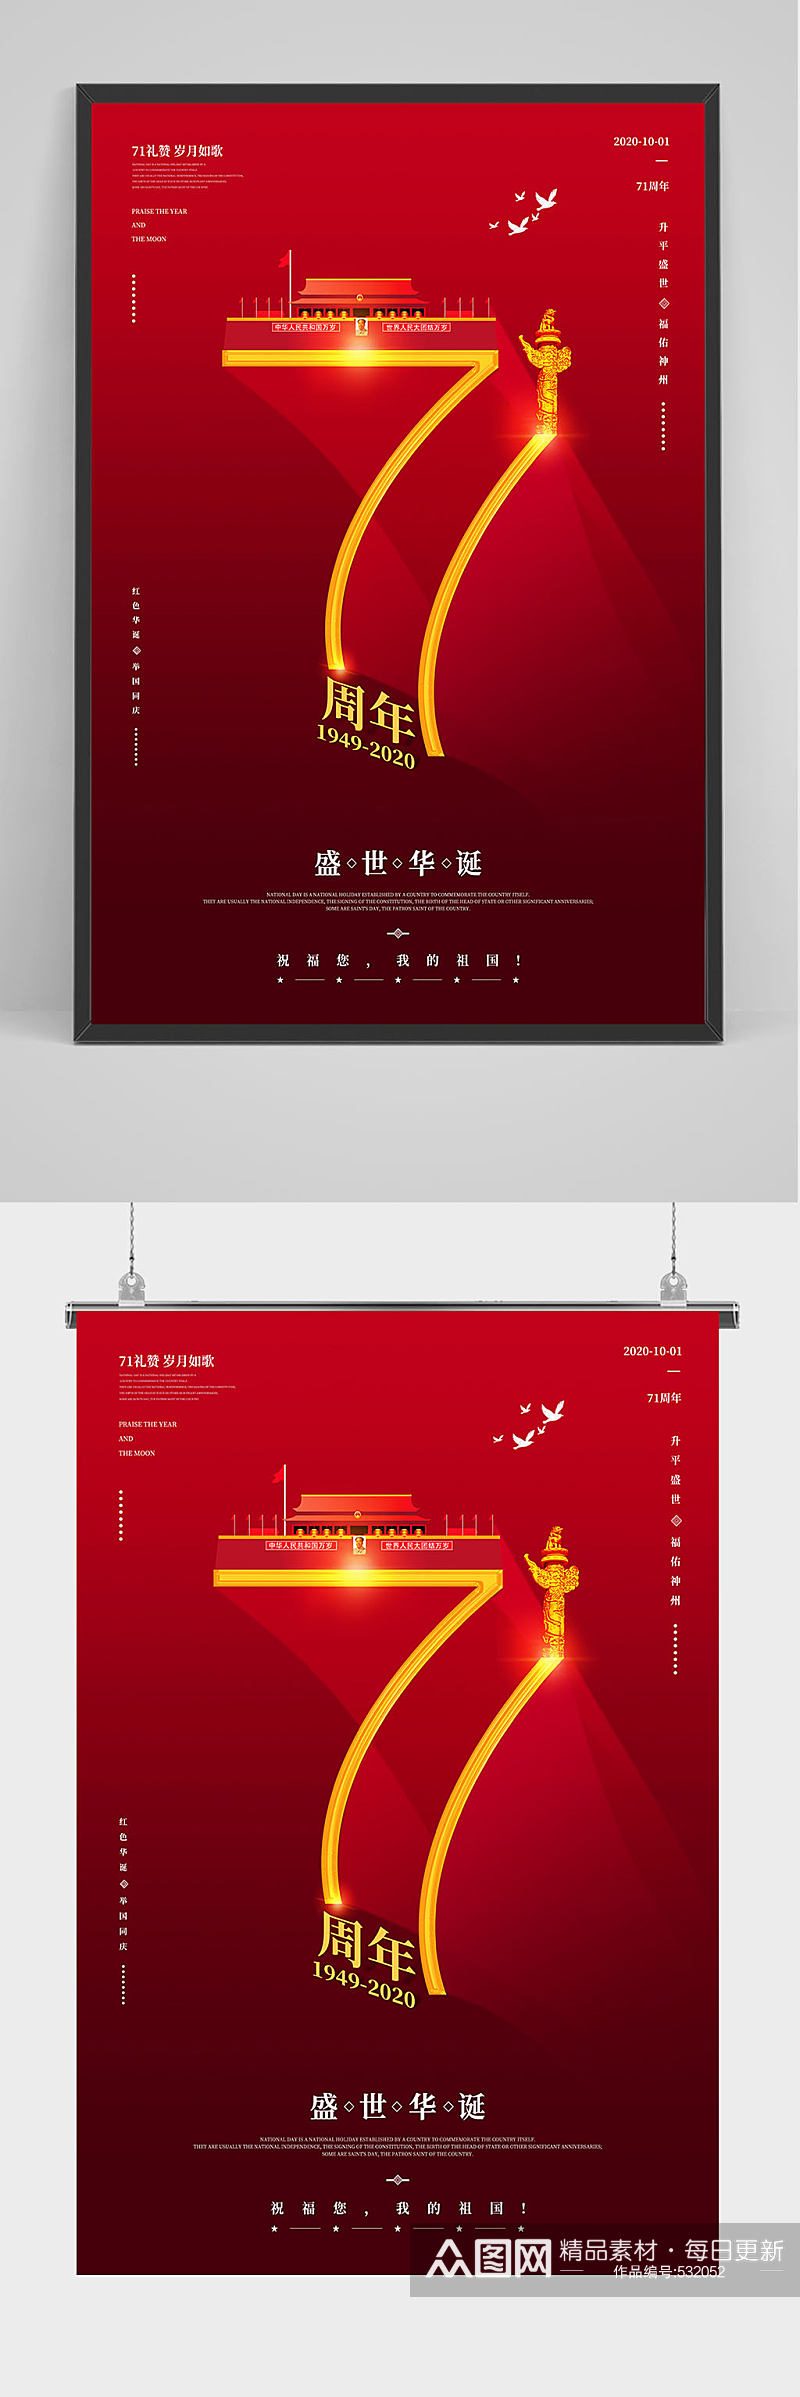 庆祝中国建国71周年海报设计素材